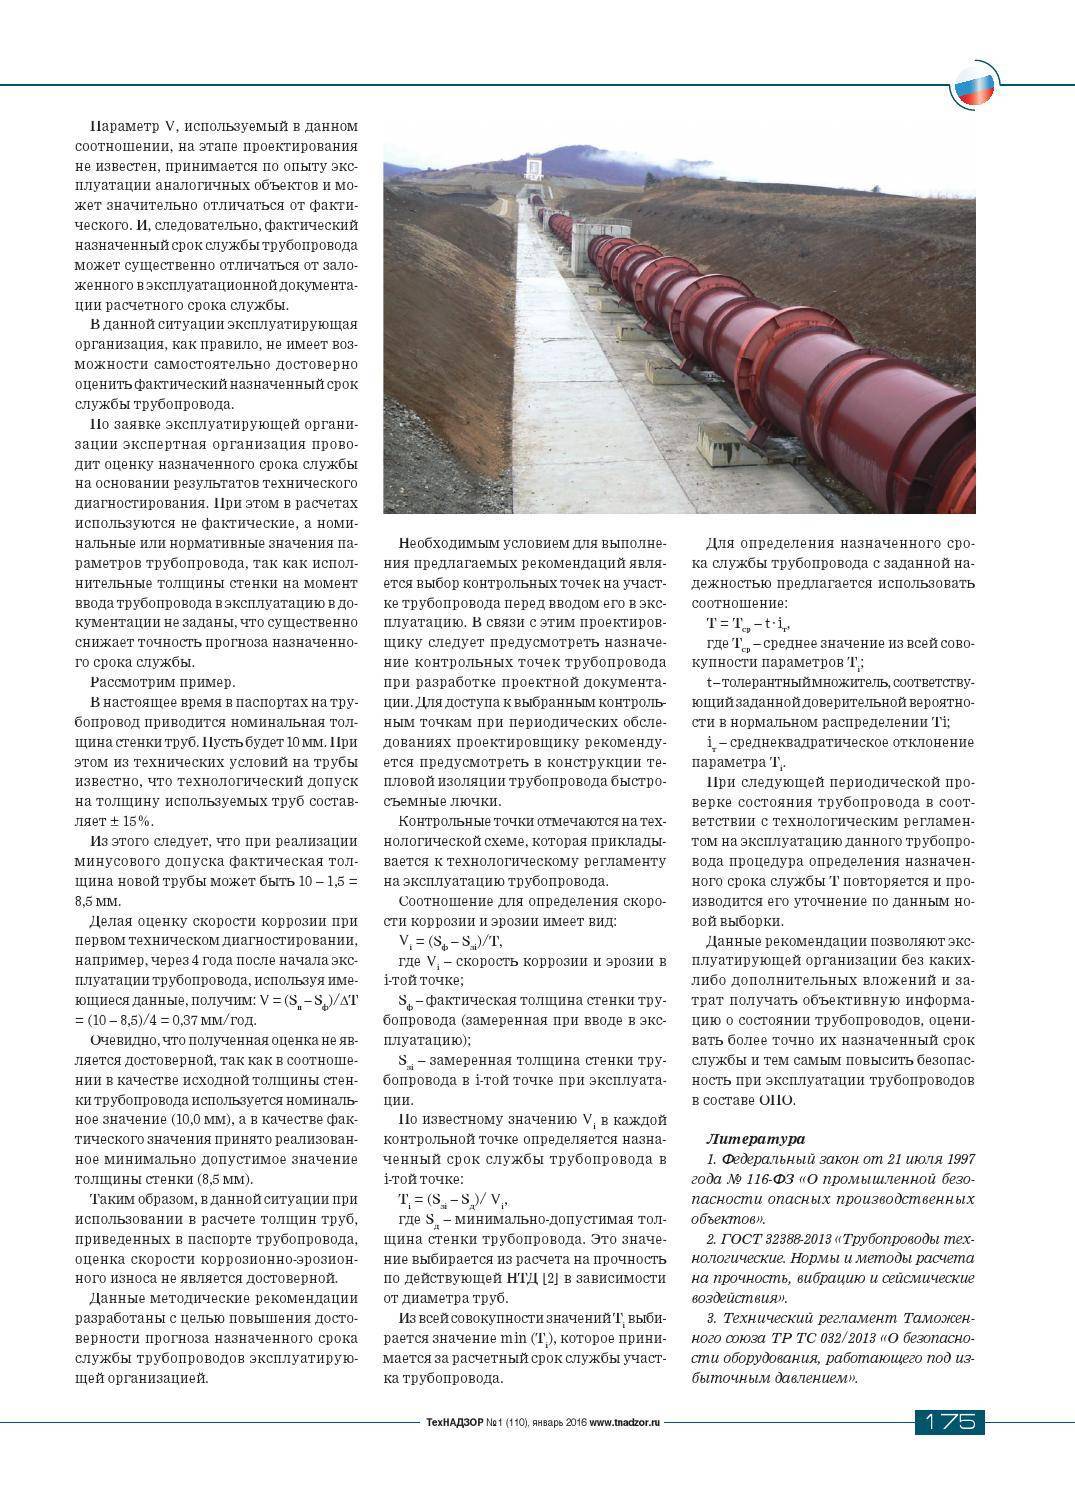 Эксплуатация газопроводов и оборудования: расчет остаточного срока службы + нормативные требования